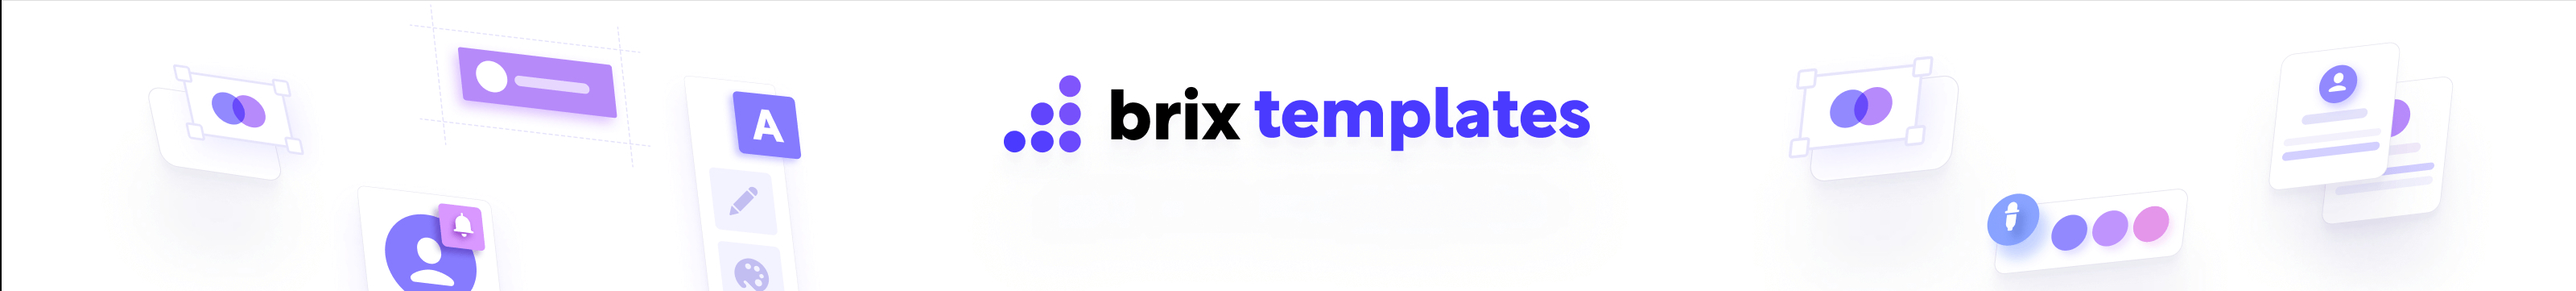 BRIX Templates's profile banner